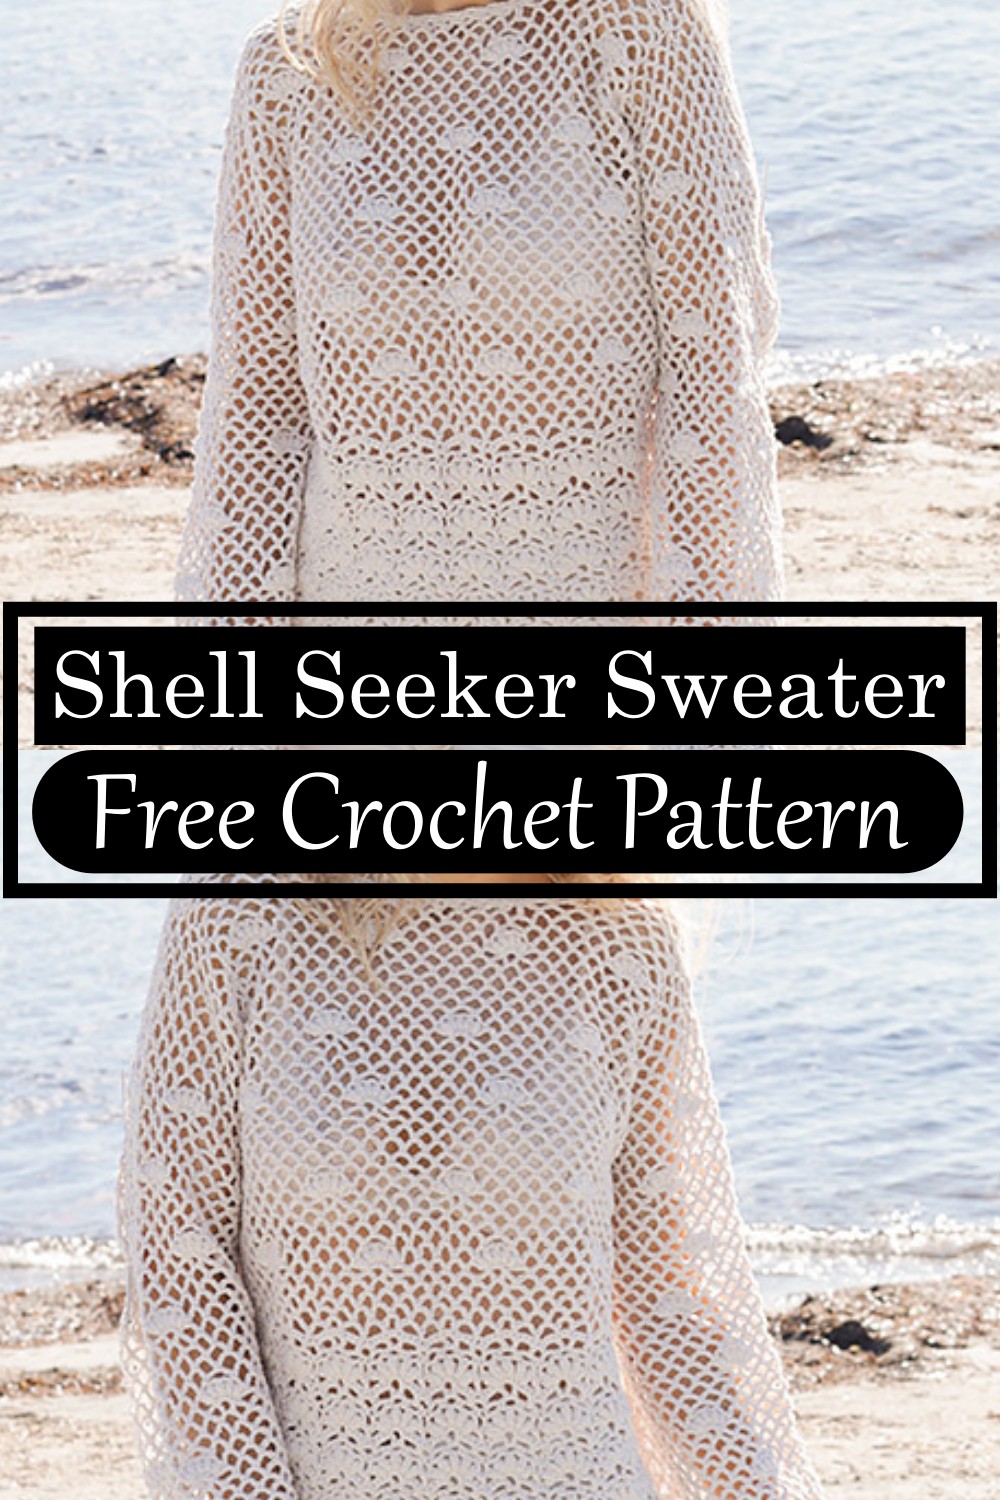 Shell Seeker Sweater